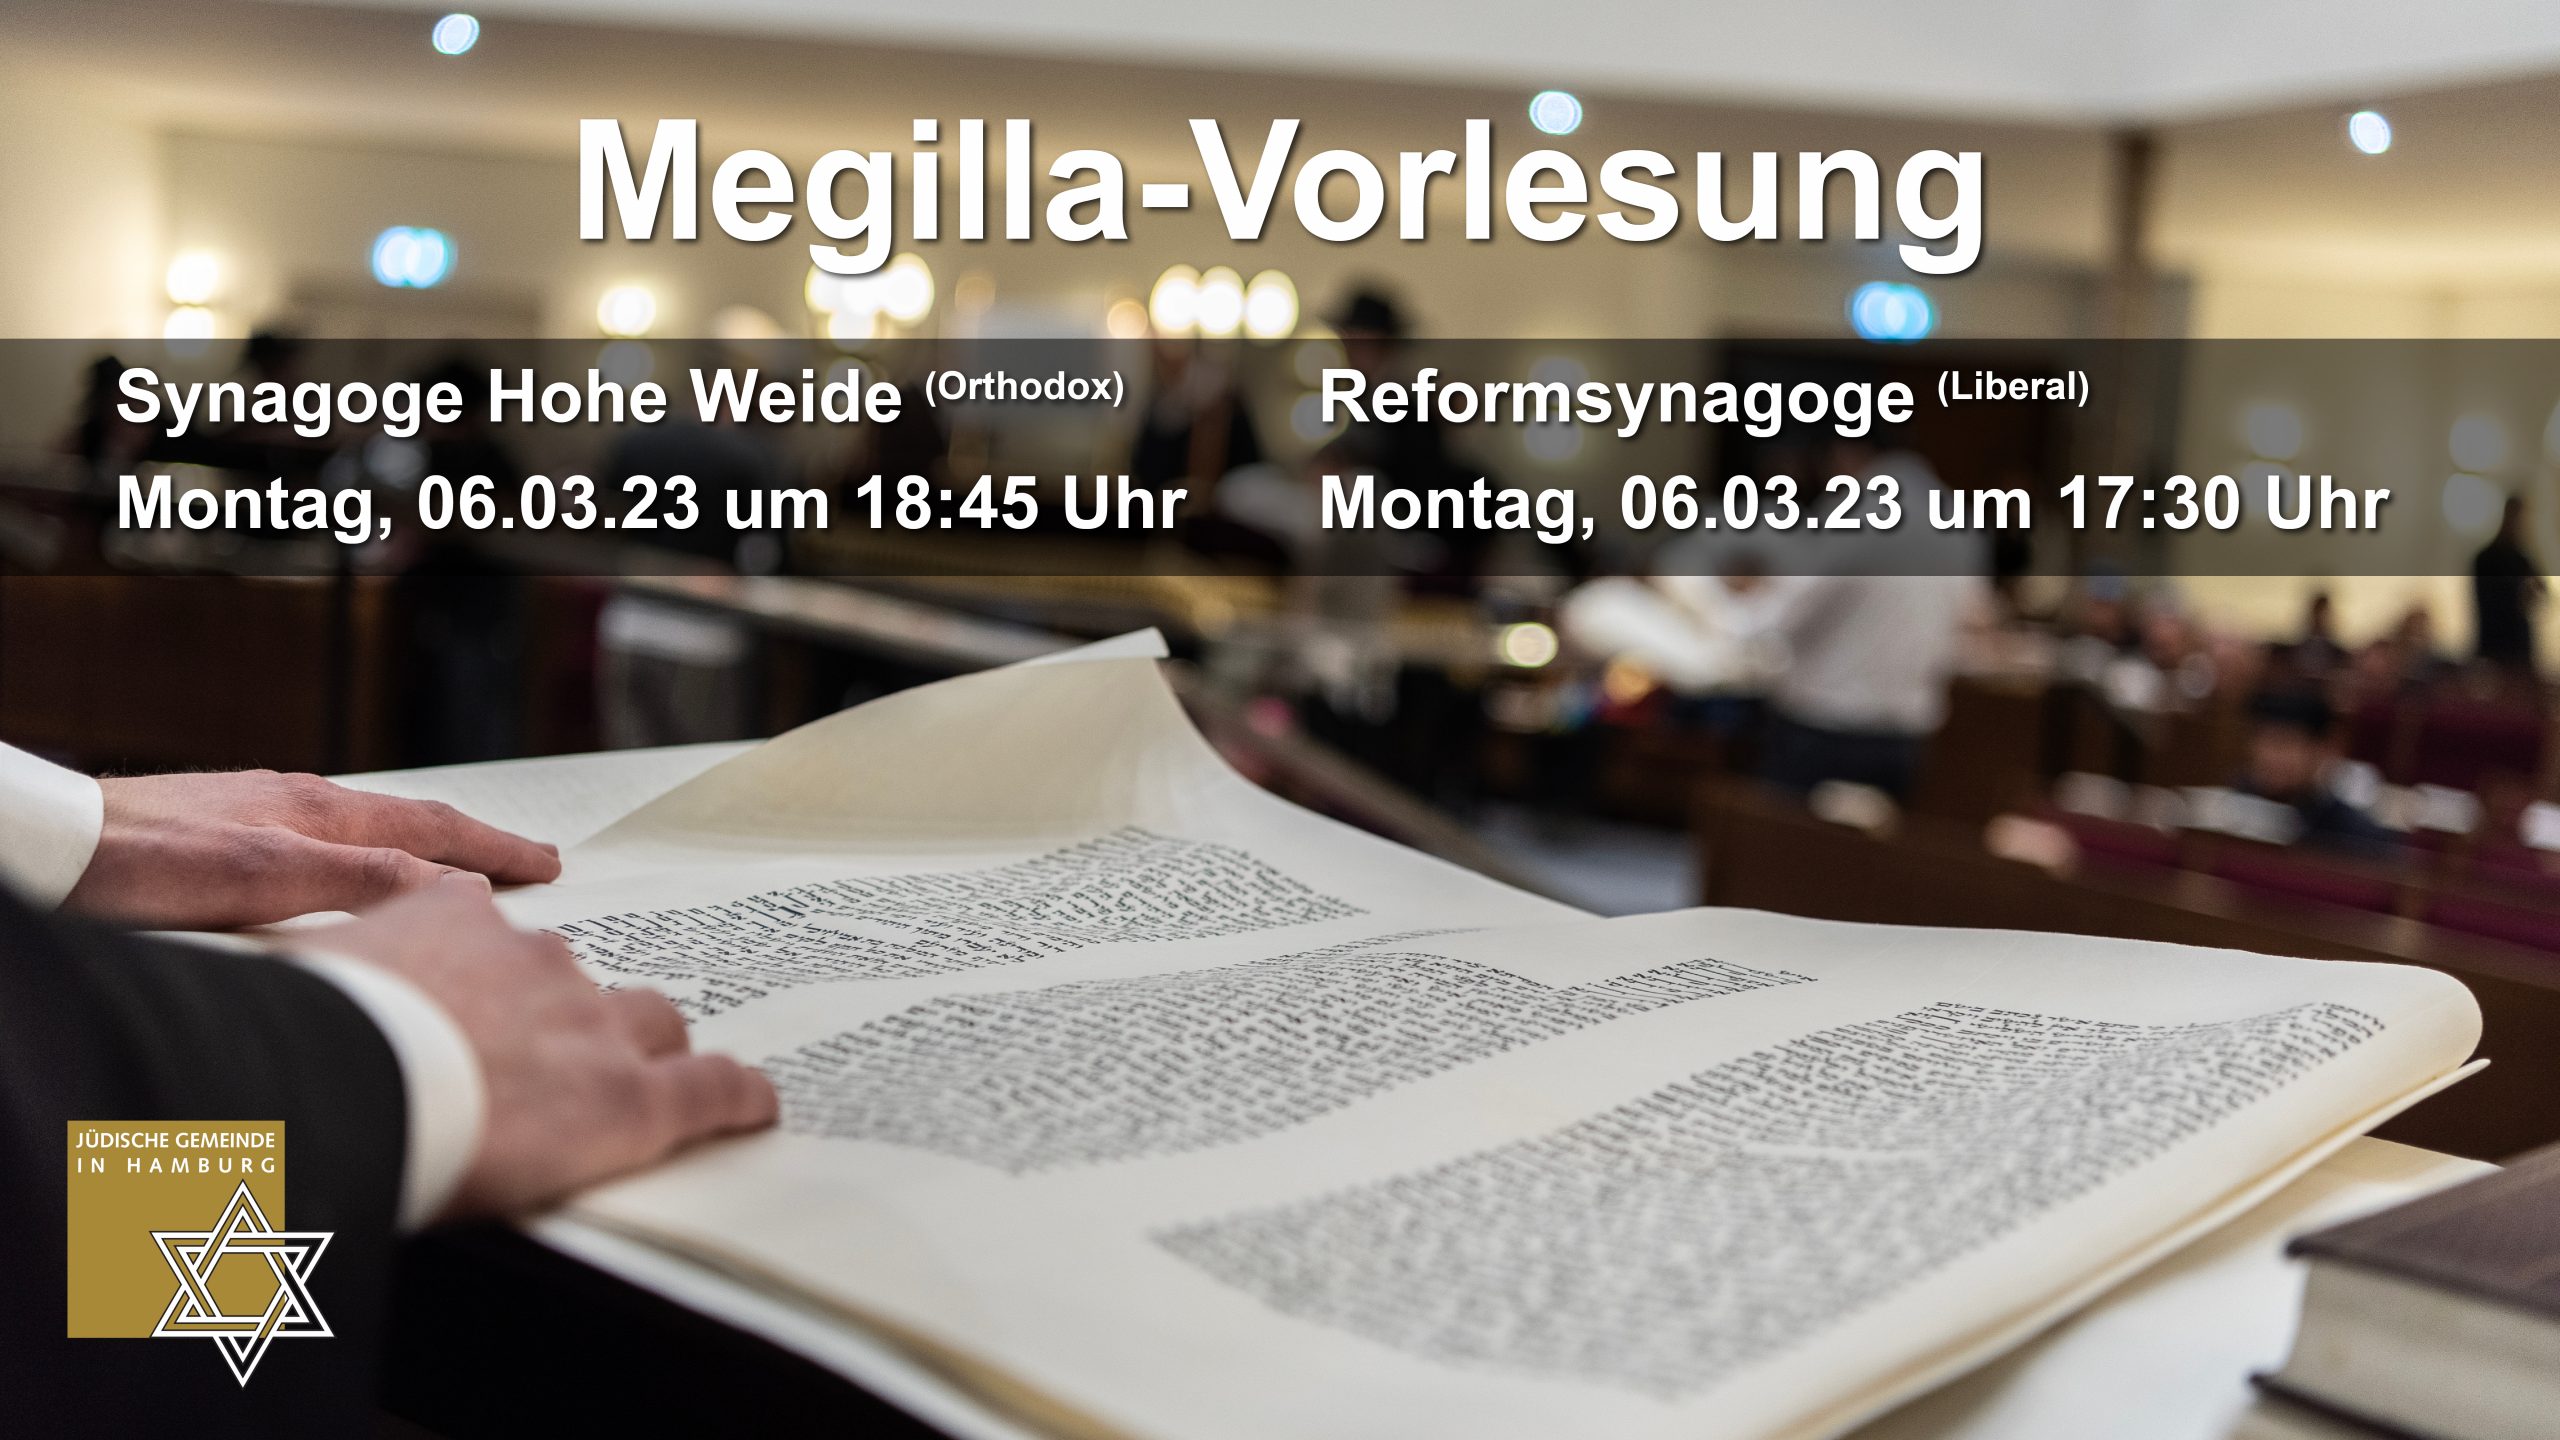 JGHH: Megilla-Vorlesung in Hamburg